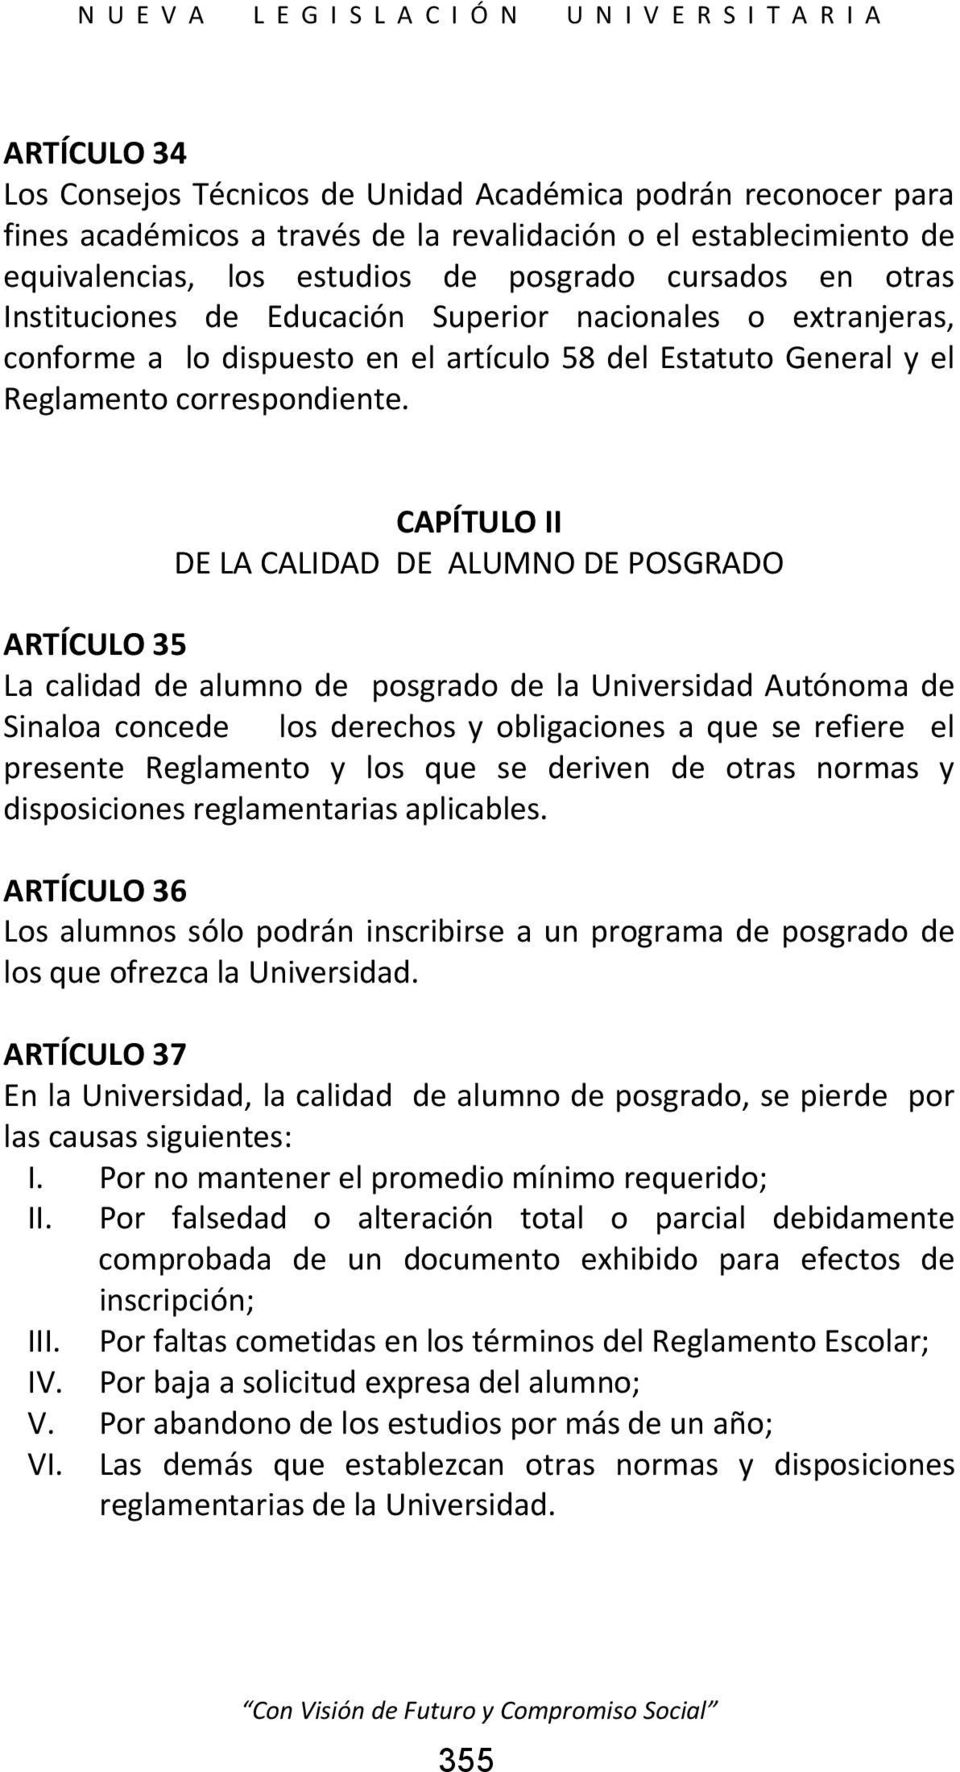 CAPÍTULO II DE LA CALIDAD DE ALUMNO DE POSGRADO ARTÍCULO 35 La calidad de alumno de posgrado de la Universidad Autónoma de Sinaloa concede los derechos y obligaciones a que se refiere el presente